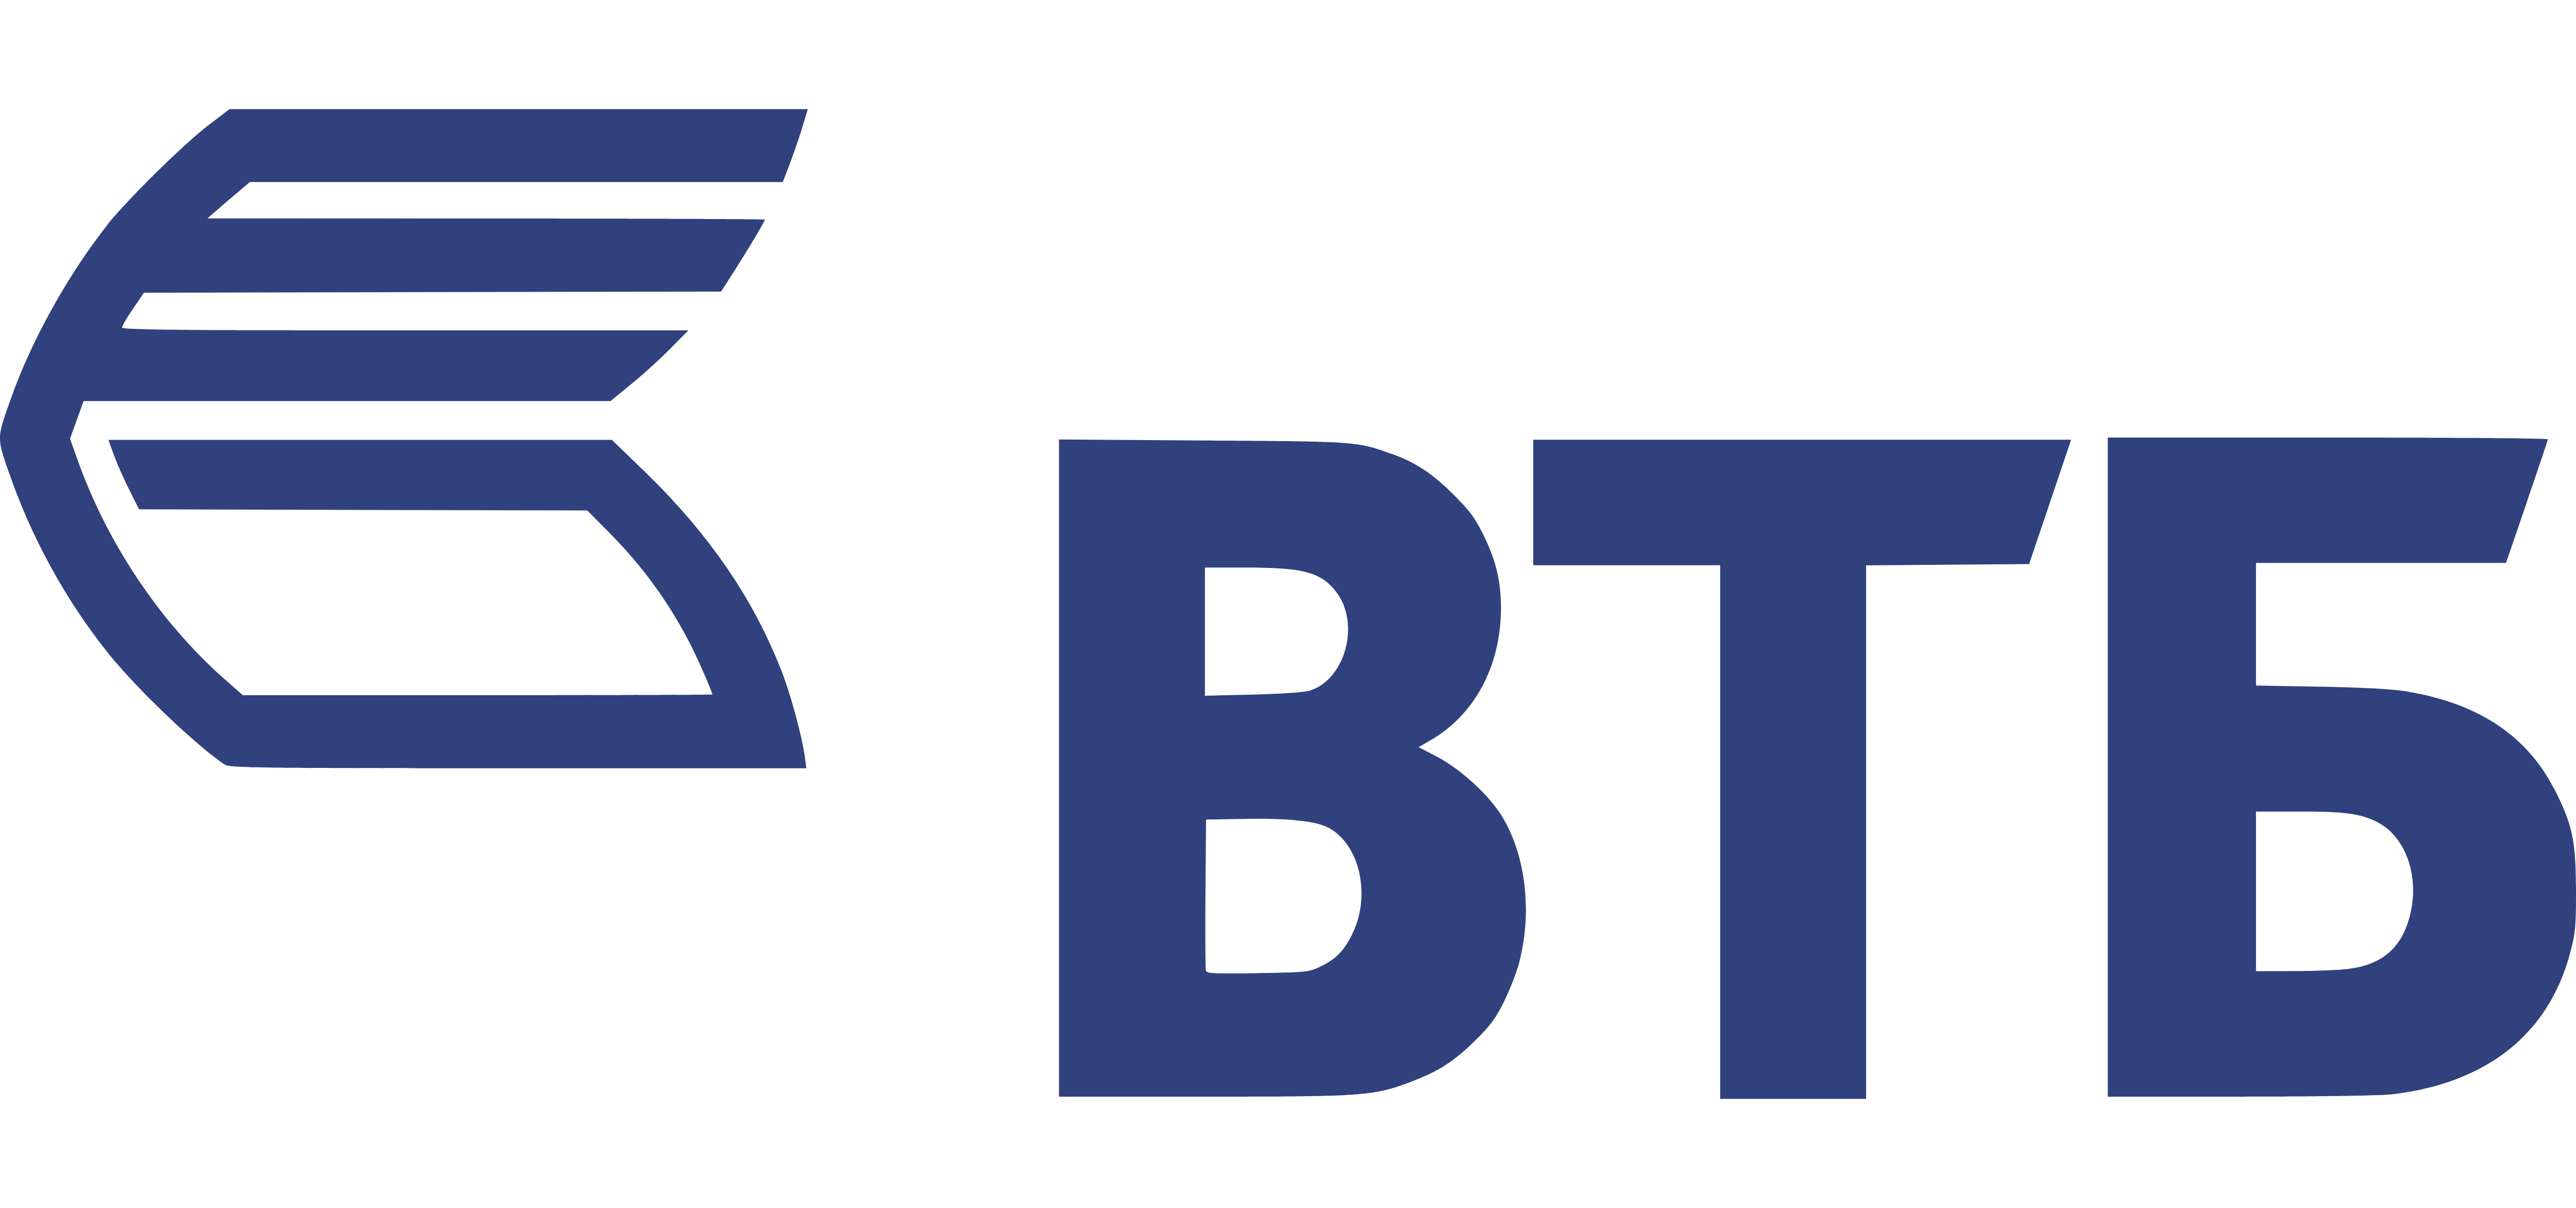 Втб публичное акционерное общество. Эмблема ВТБ банка. ВТБ 24 логотип новый. ВТБ логотип 2021.